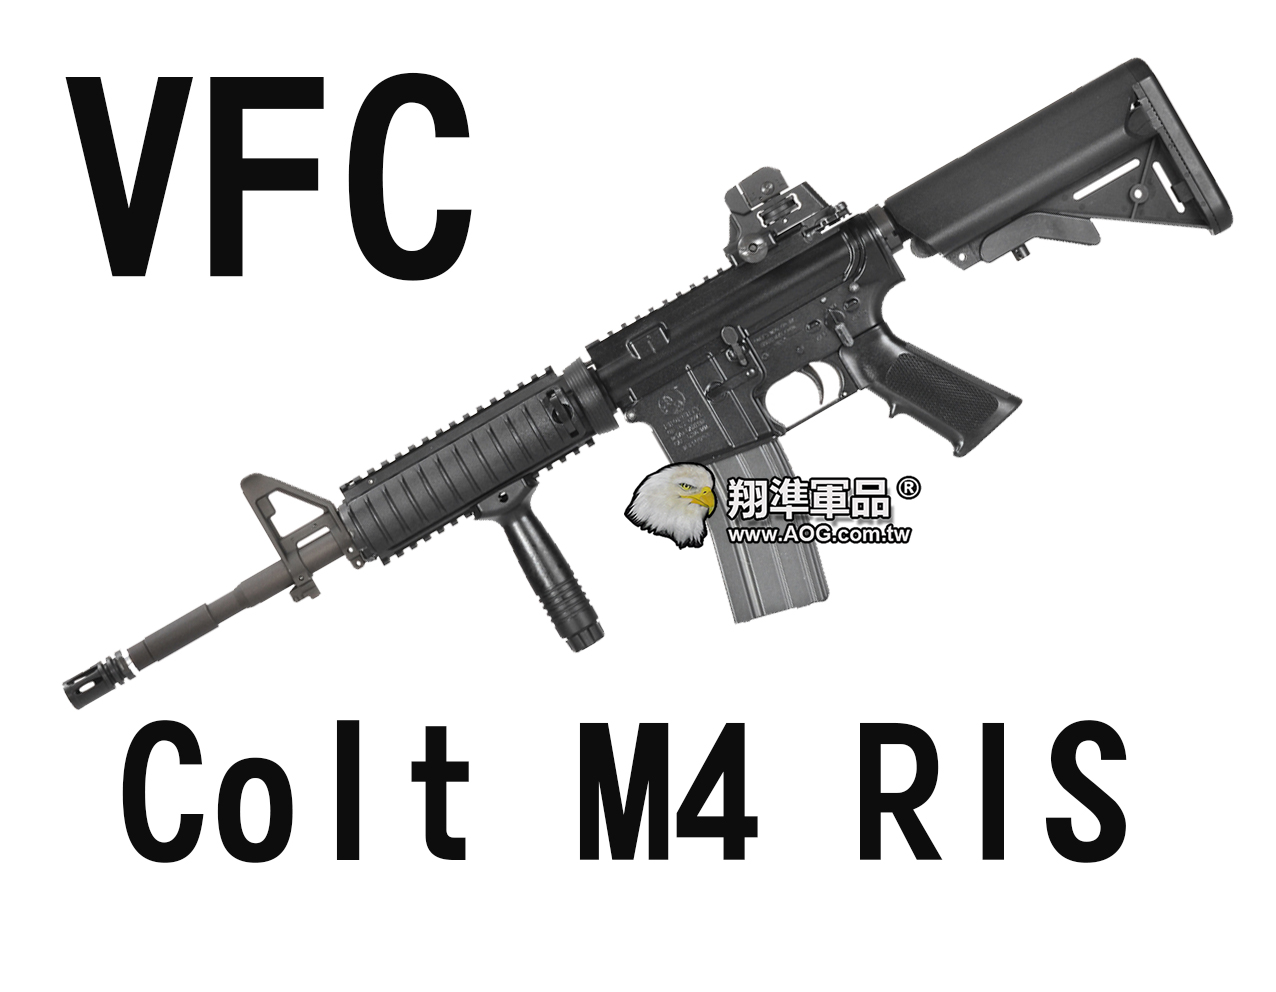 【翔準軍品AOG】【VFC】Colt M4 RIS (STD) 海豹托 魚骨版+握把 電動槍 長槍 衝鋒槍 黑色 VF1-LM4RIS-BK01